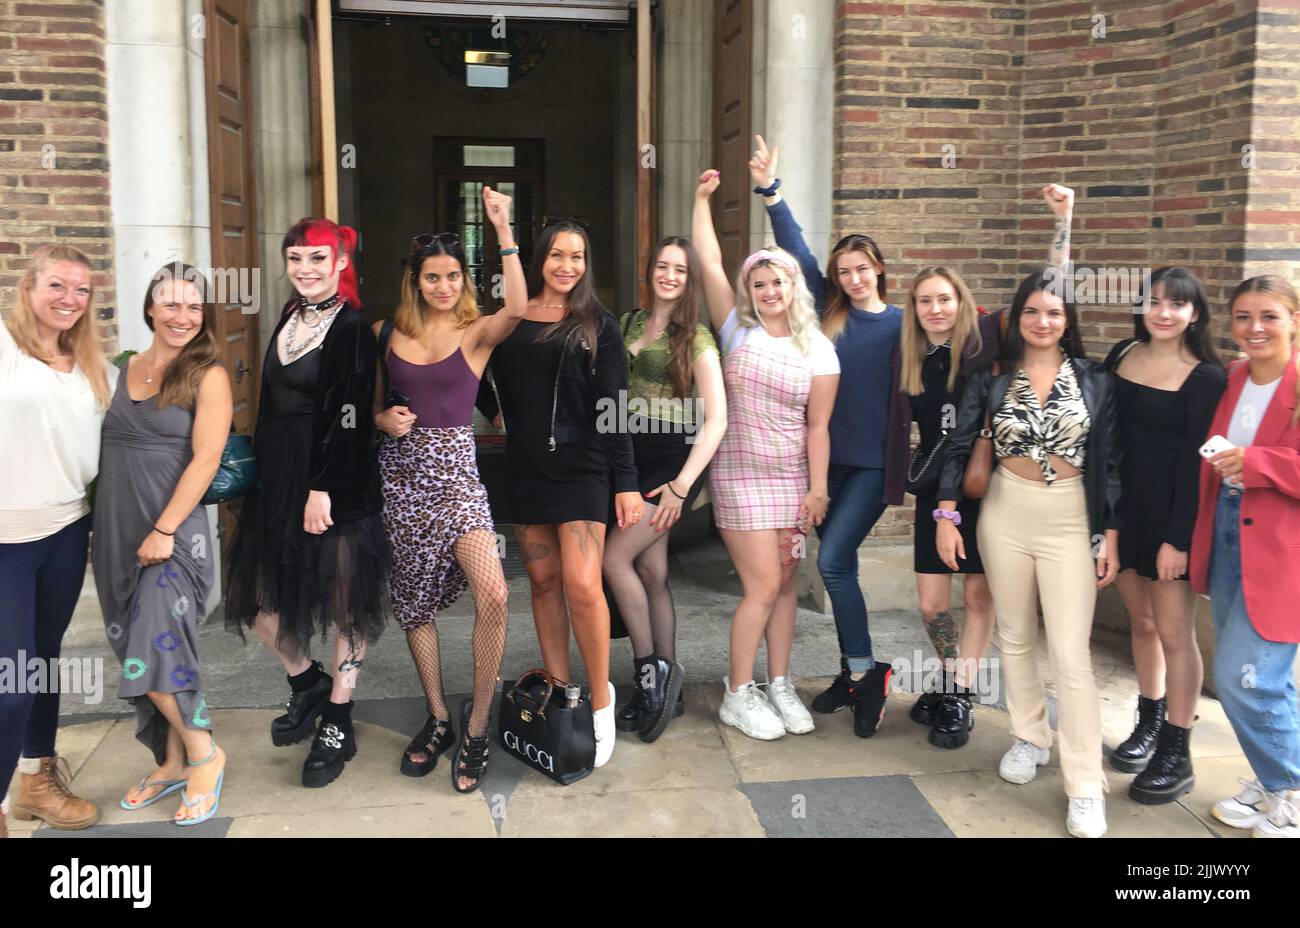 MEJOR CALIDAD DISPONIBLE bailarines exóticos en los pasos del Ayuntamiento de Bristol después de que el consejo votó en contra una moción para prohibir clubes de strip y otros lugares de entretenimiento sexual (SEVs) en la ciudad. Un consorcio de organizaciones de derechos de las mujeres y grupos comunitarios ha estado haciendo campaña para que Bristol siga los pasos de Edimburgo e imponga una prohibición general. Fecha de la foto: Jueves 28 de julio de 2022. Foto de stock